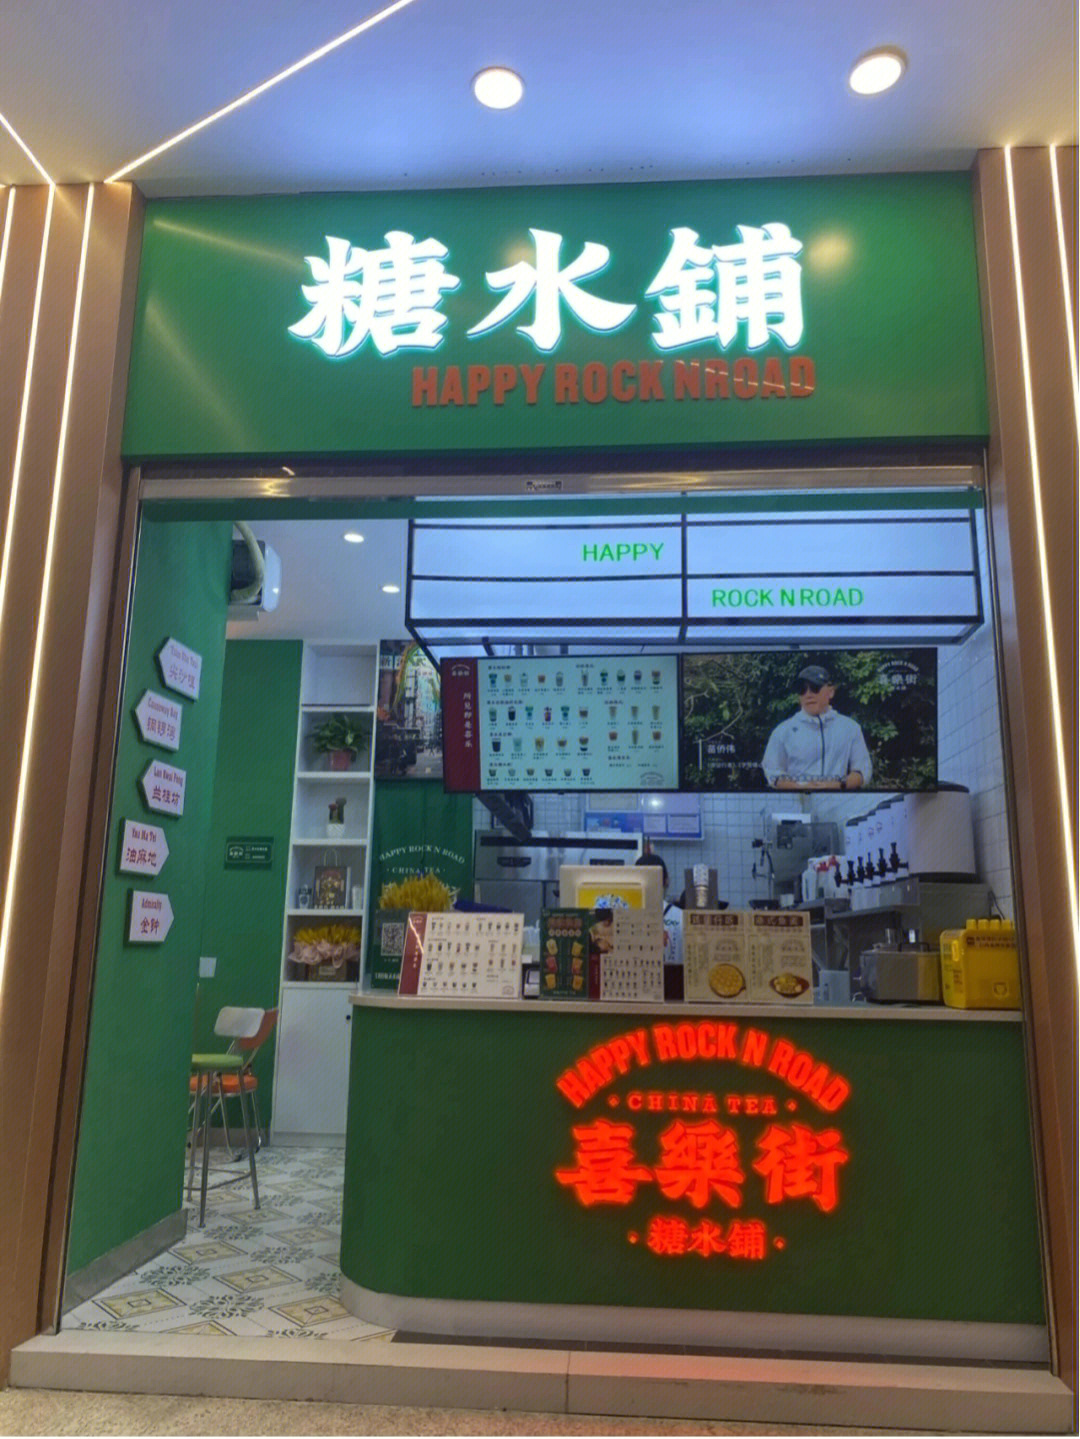 由香港喜剧大师曾志伟与40年茶餐厅大师叶从嘉联合打造的新港式茶饮